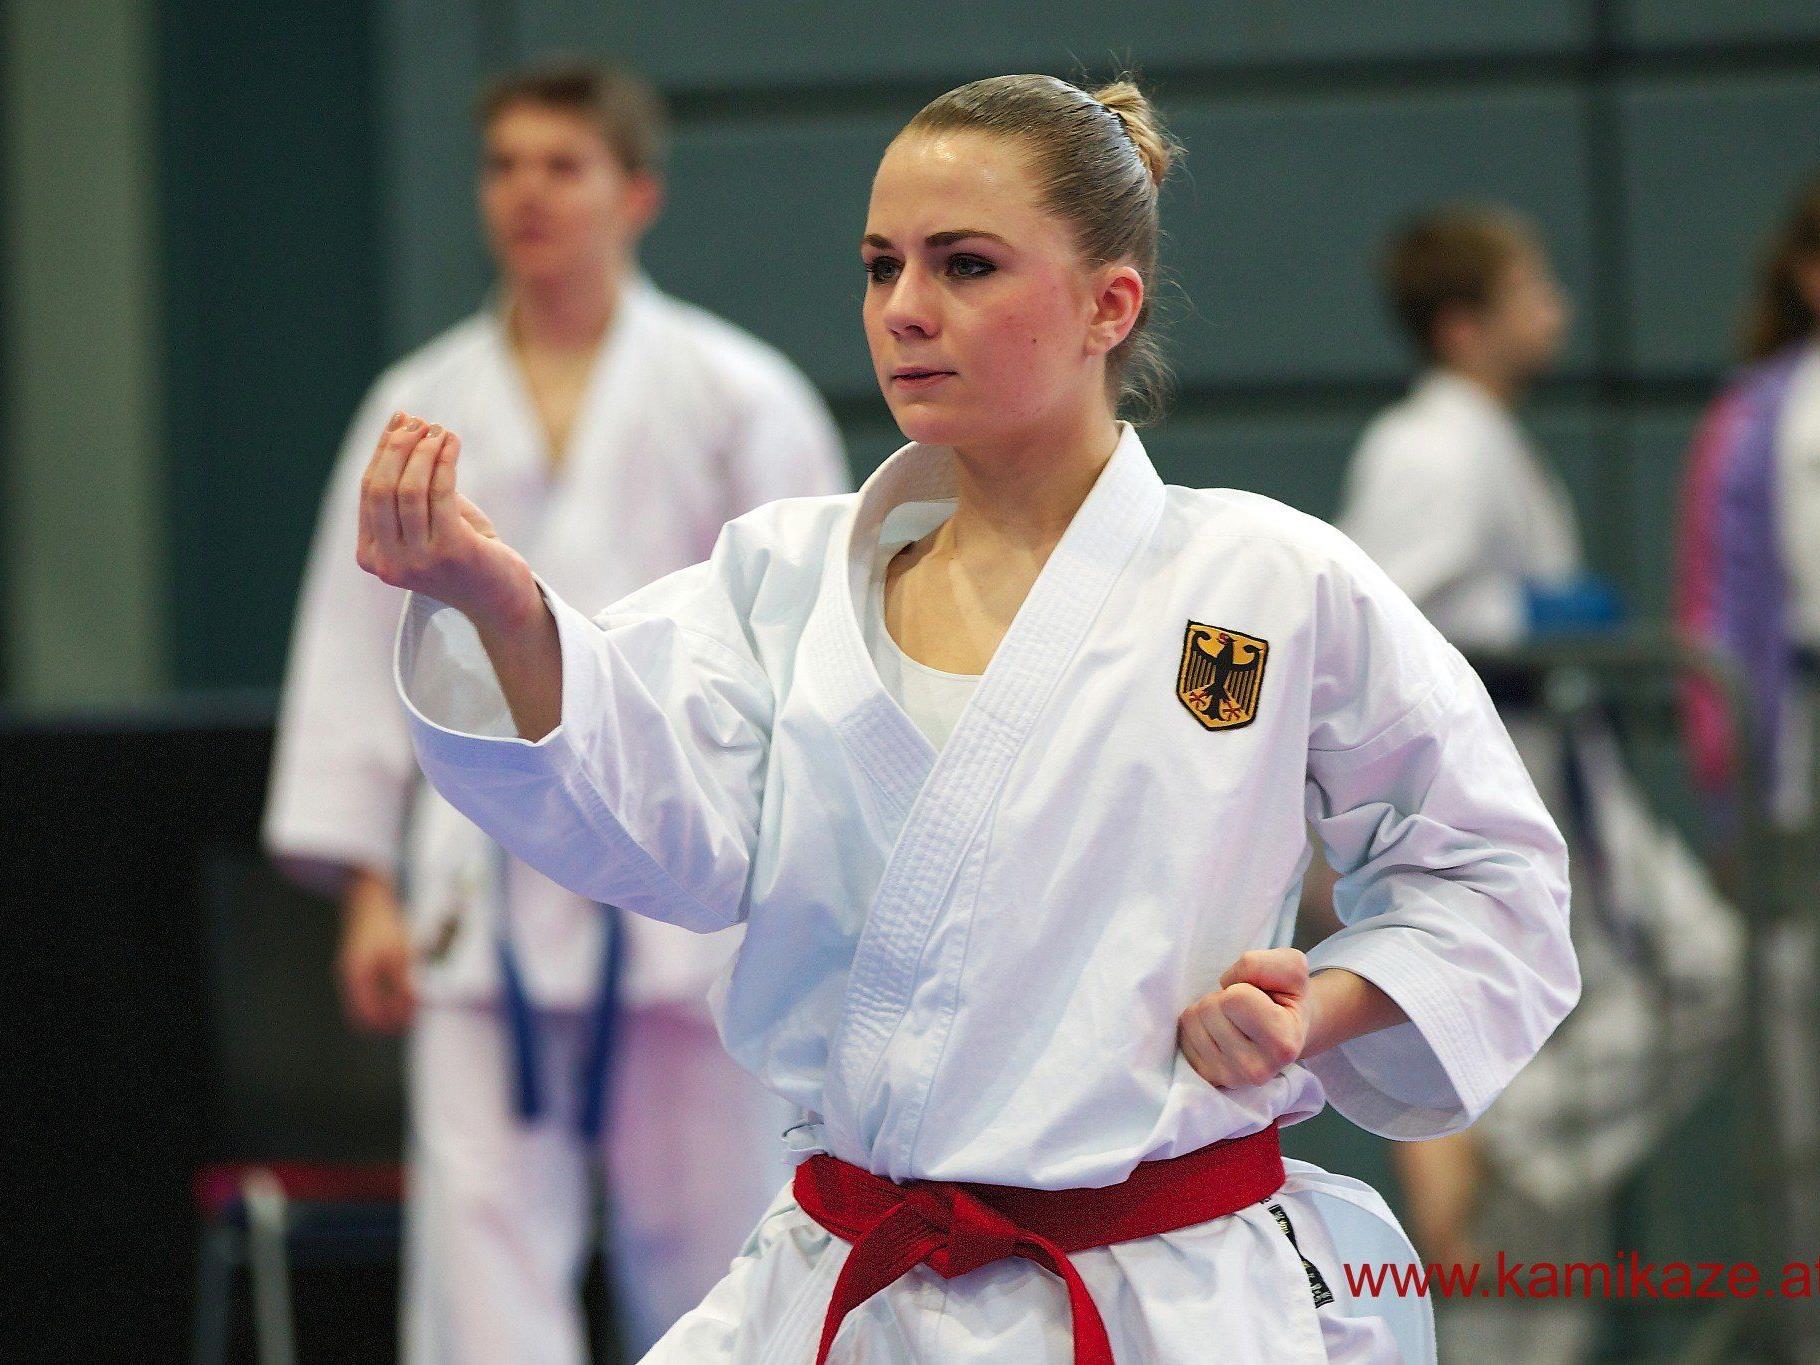 Nachwuchs Karatesport der Extraklasse in Hard.